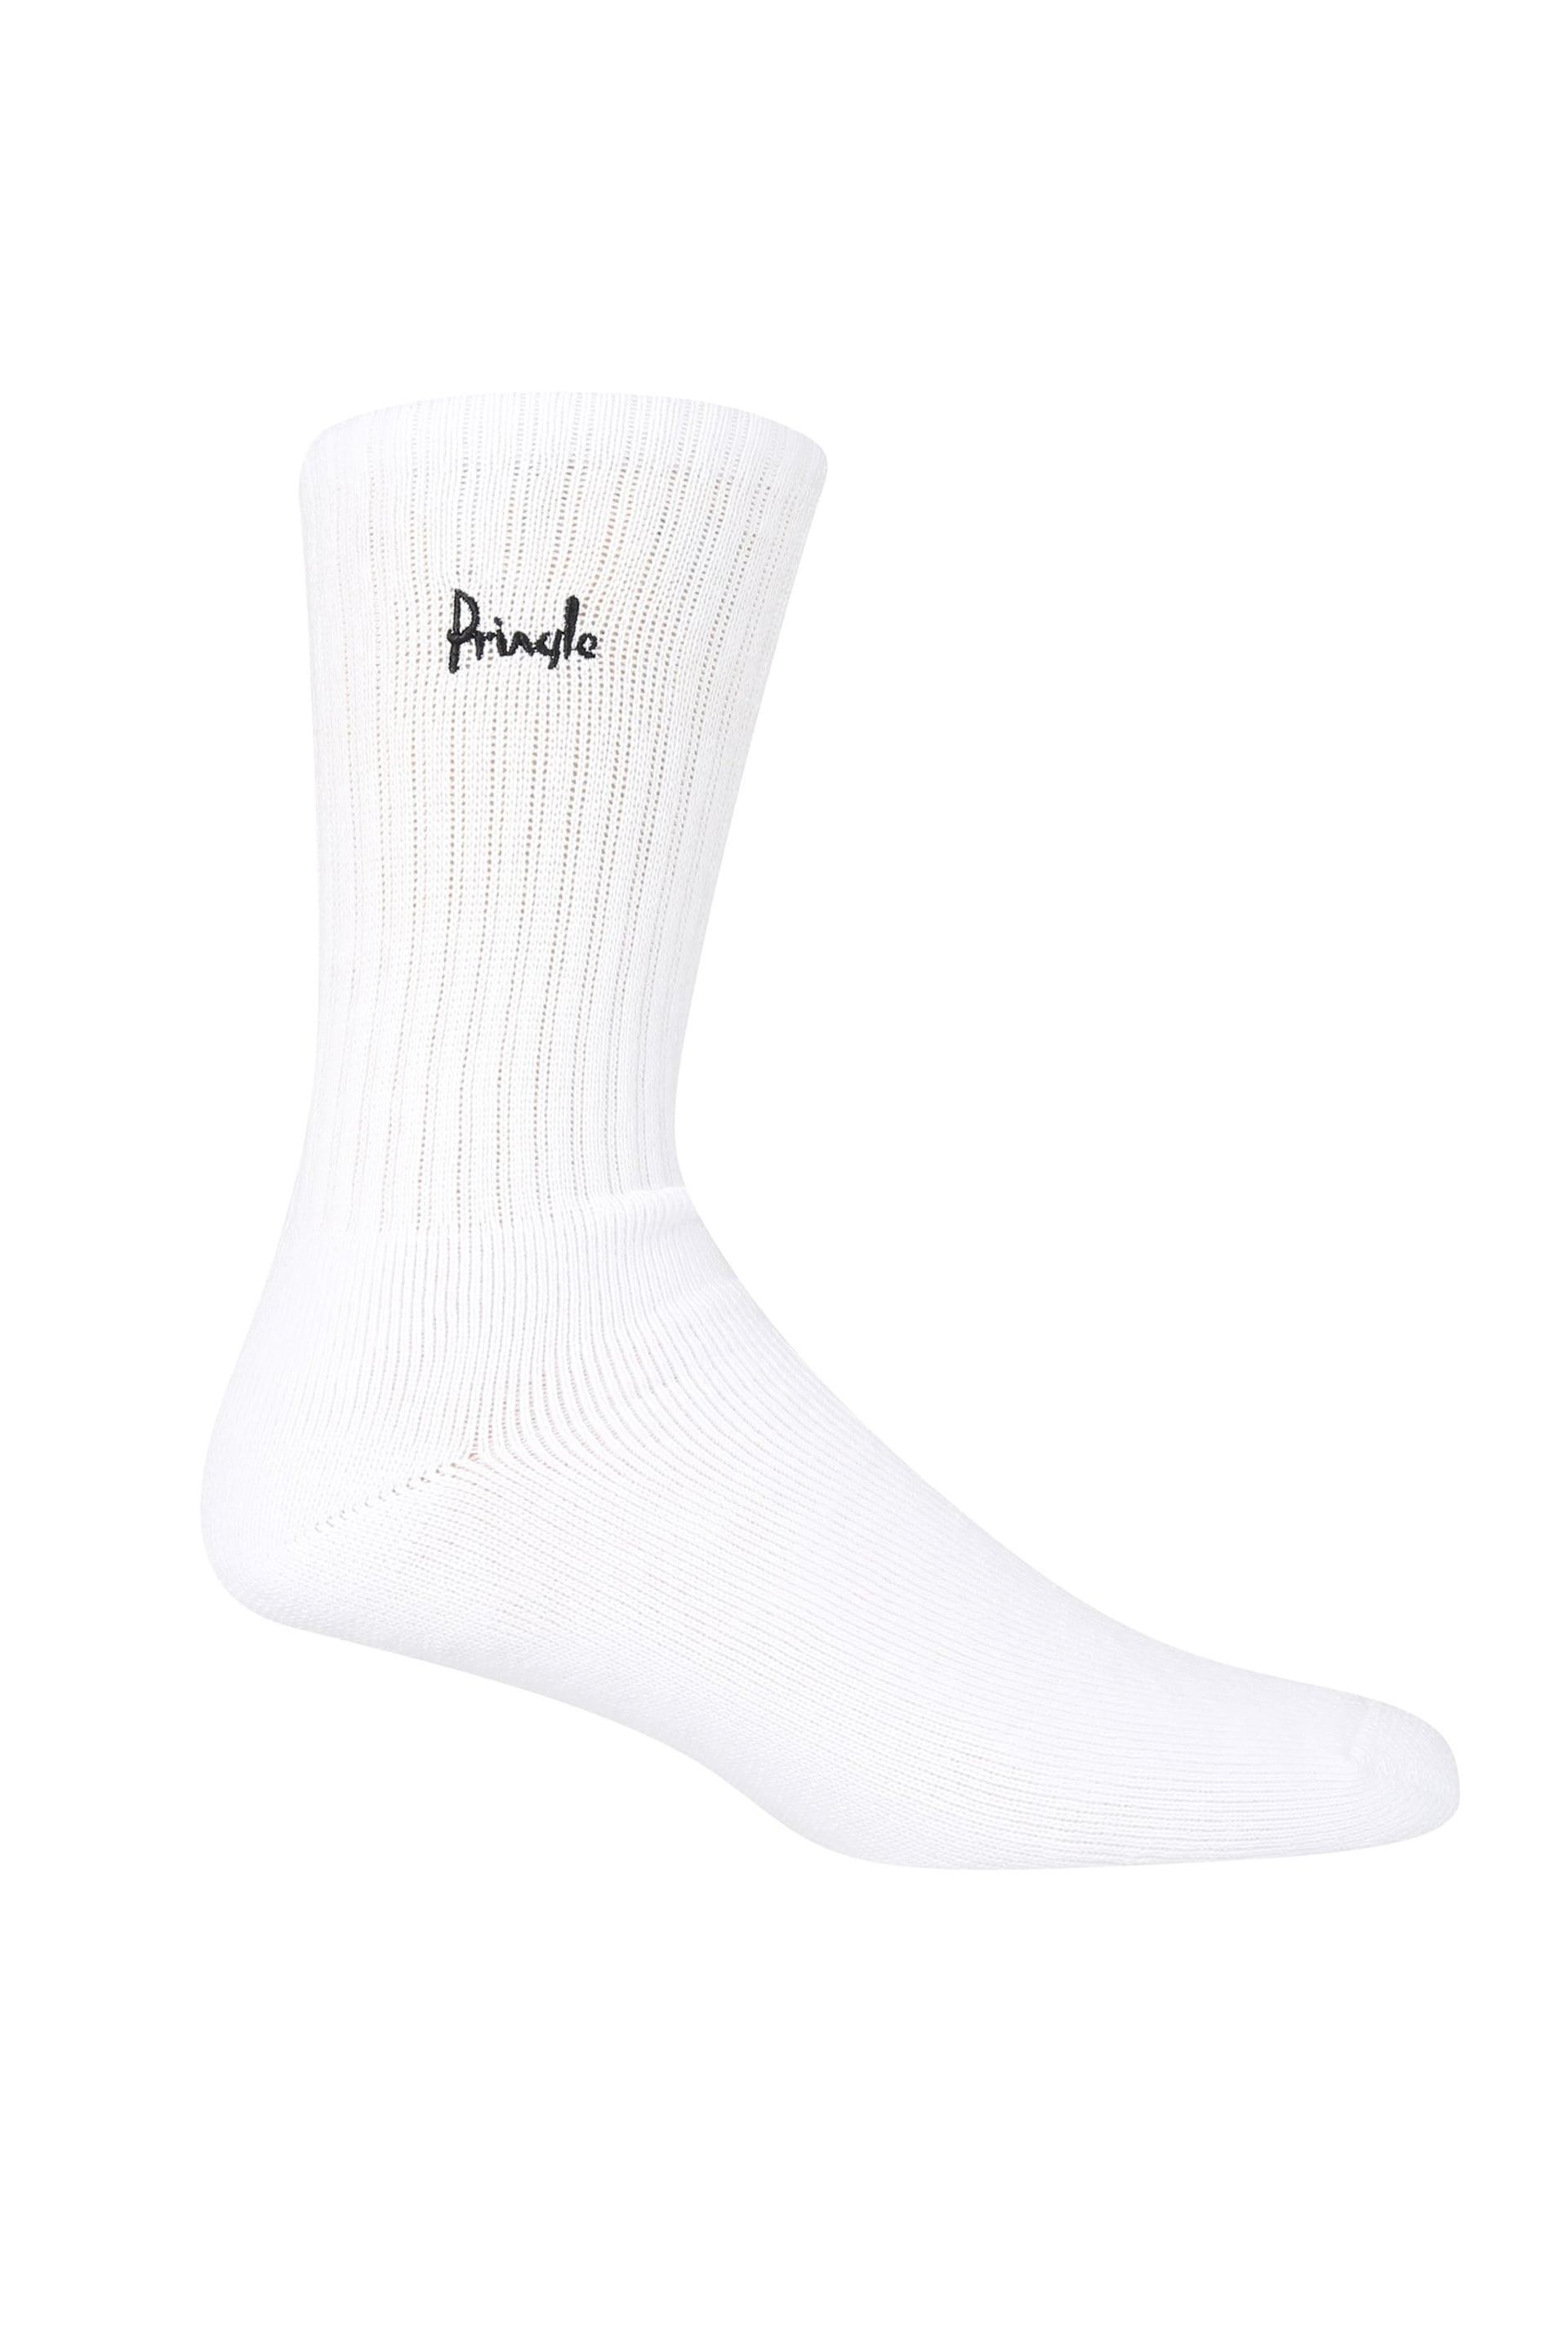 Pringle White Sports Socks - Image 4 of 7